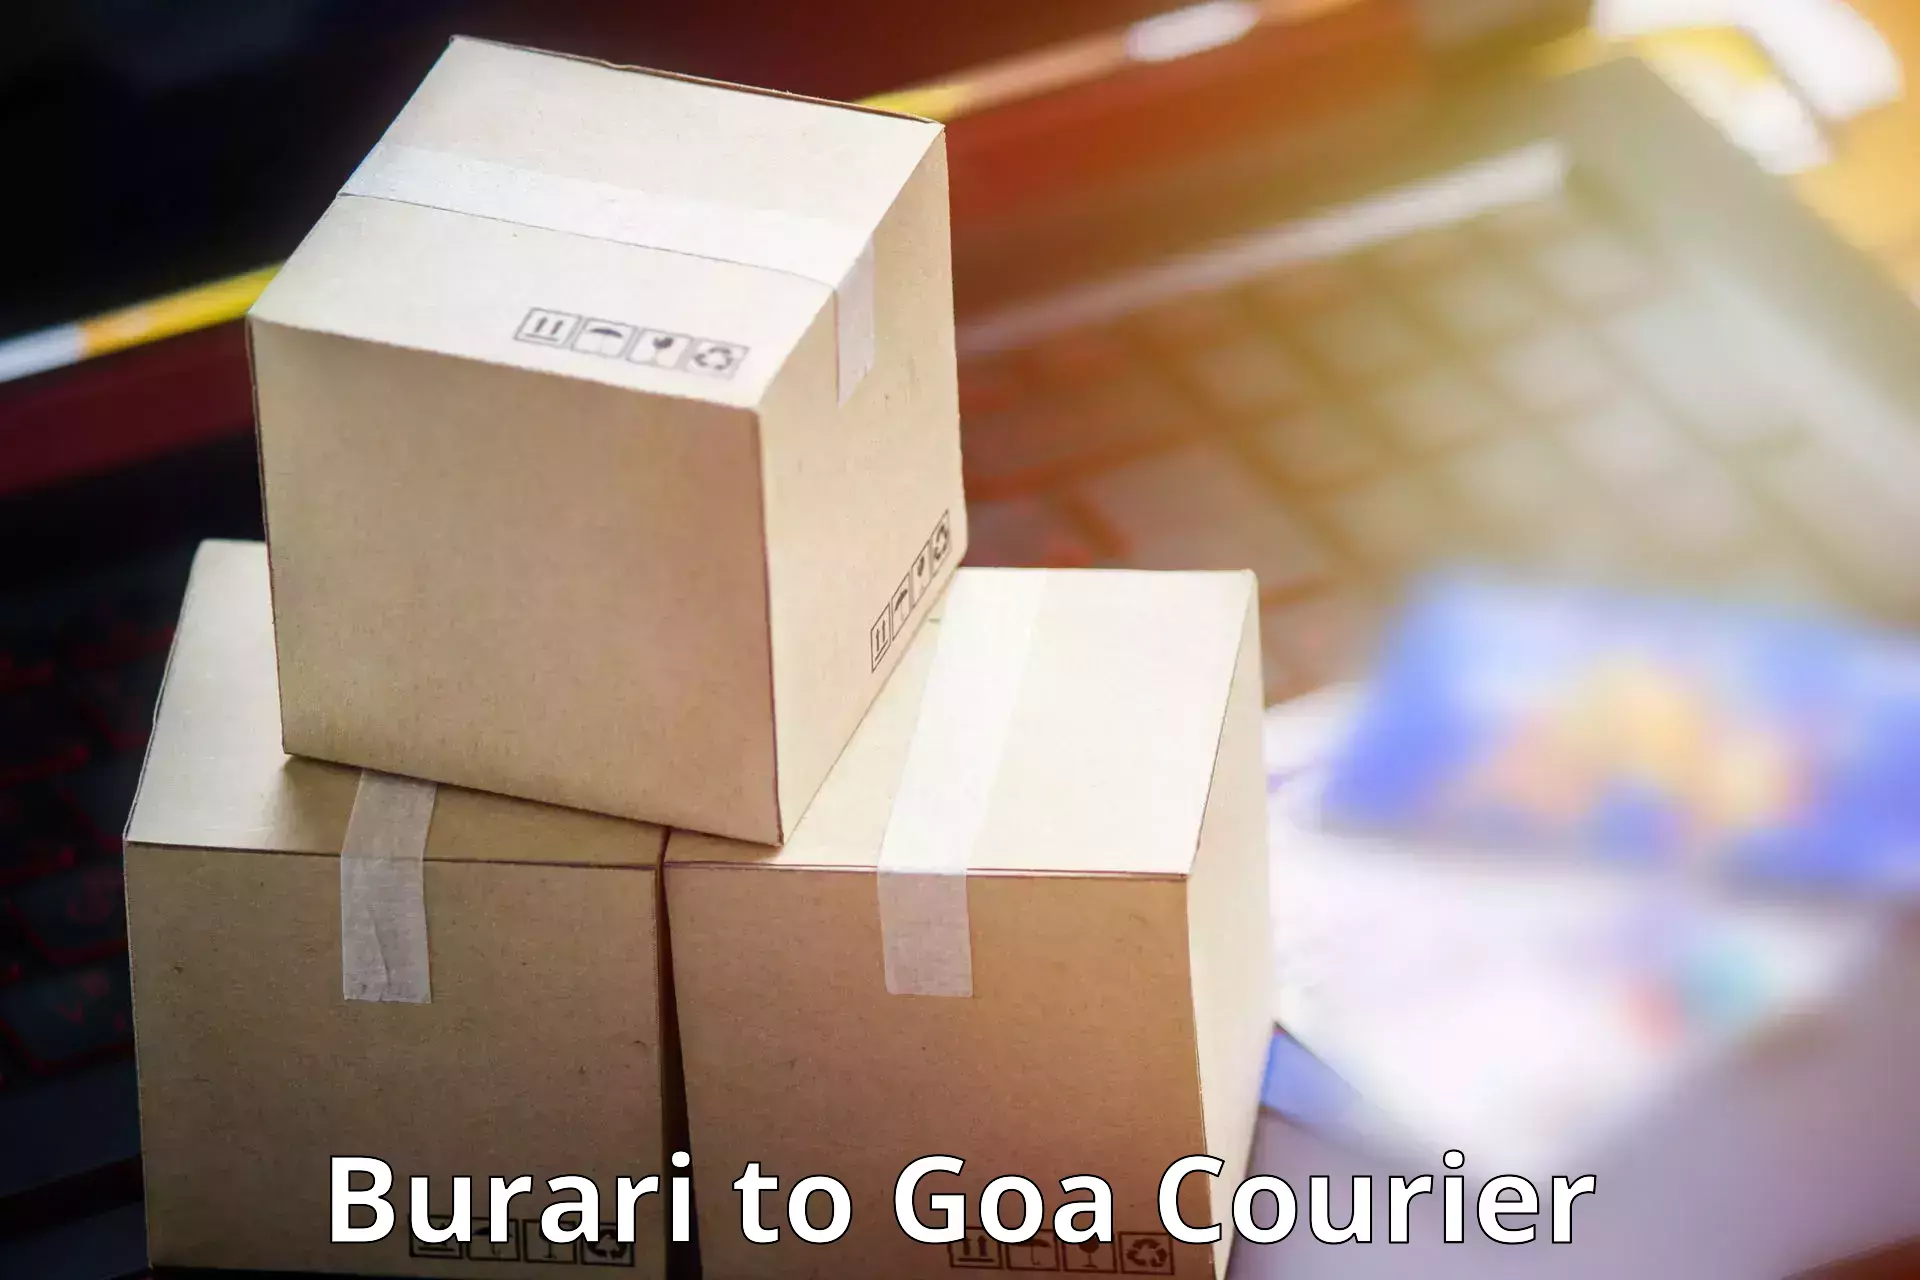 Premium courier solutions Burari to Goa University